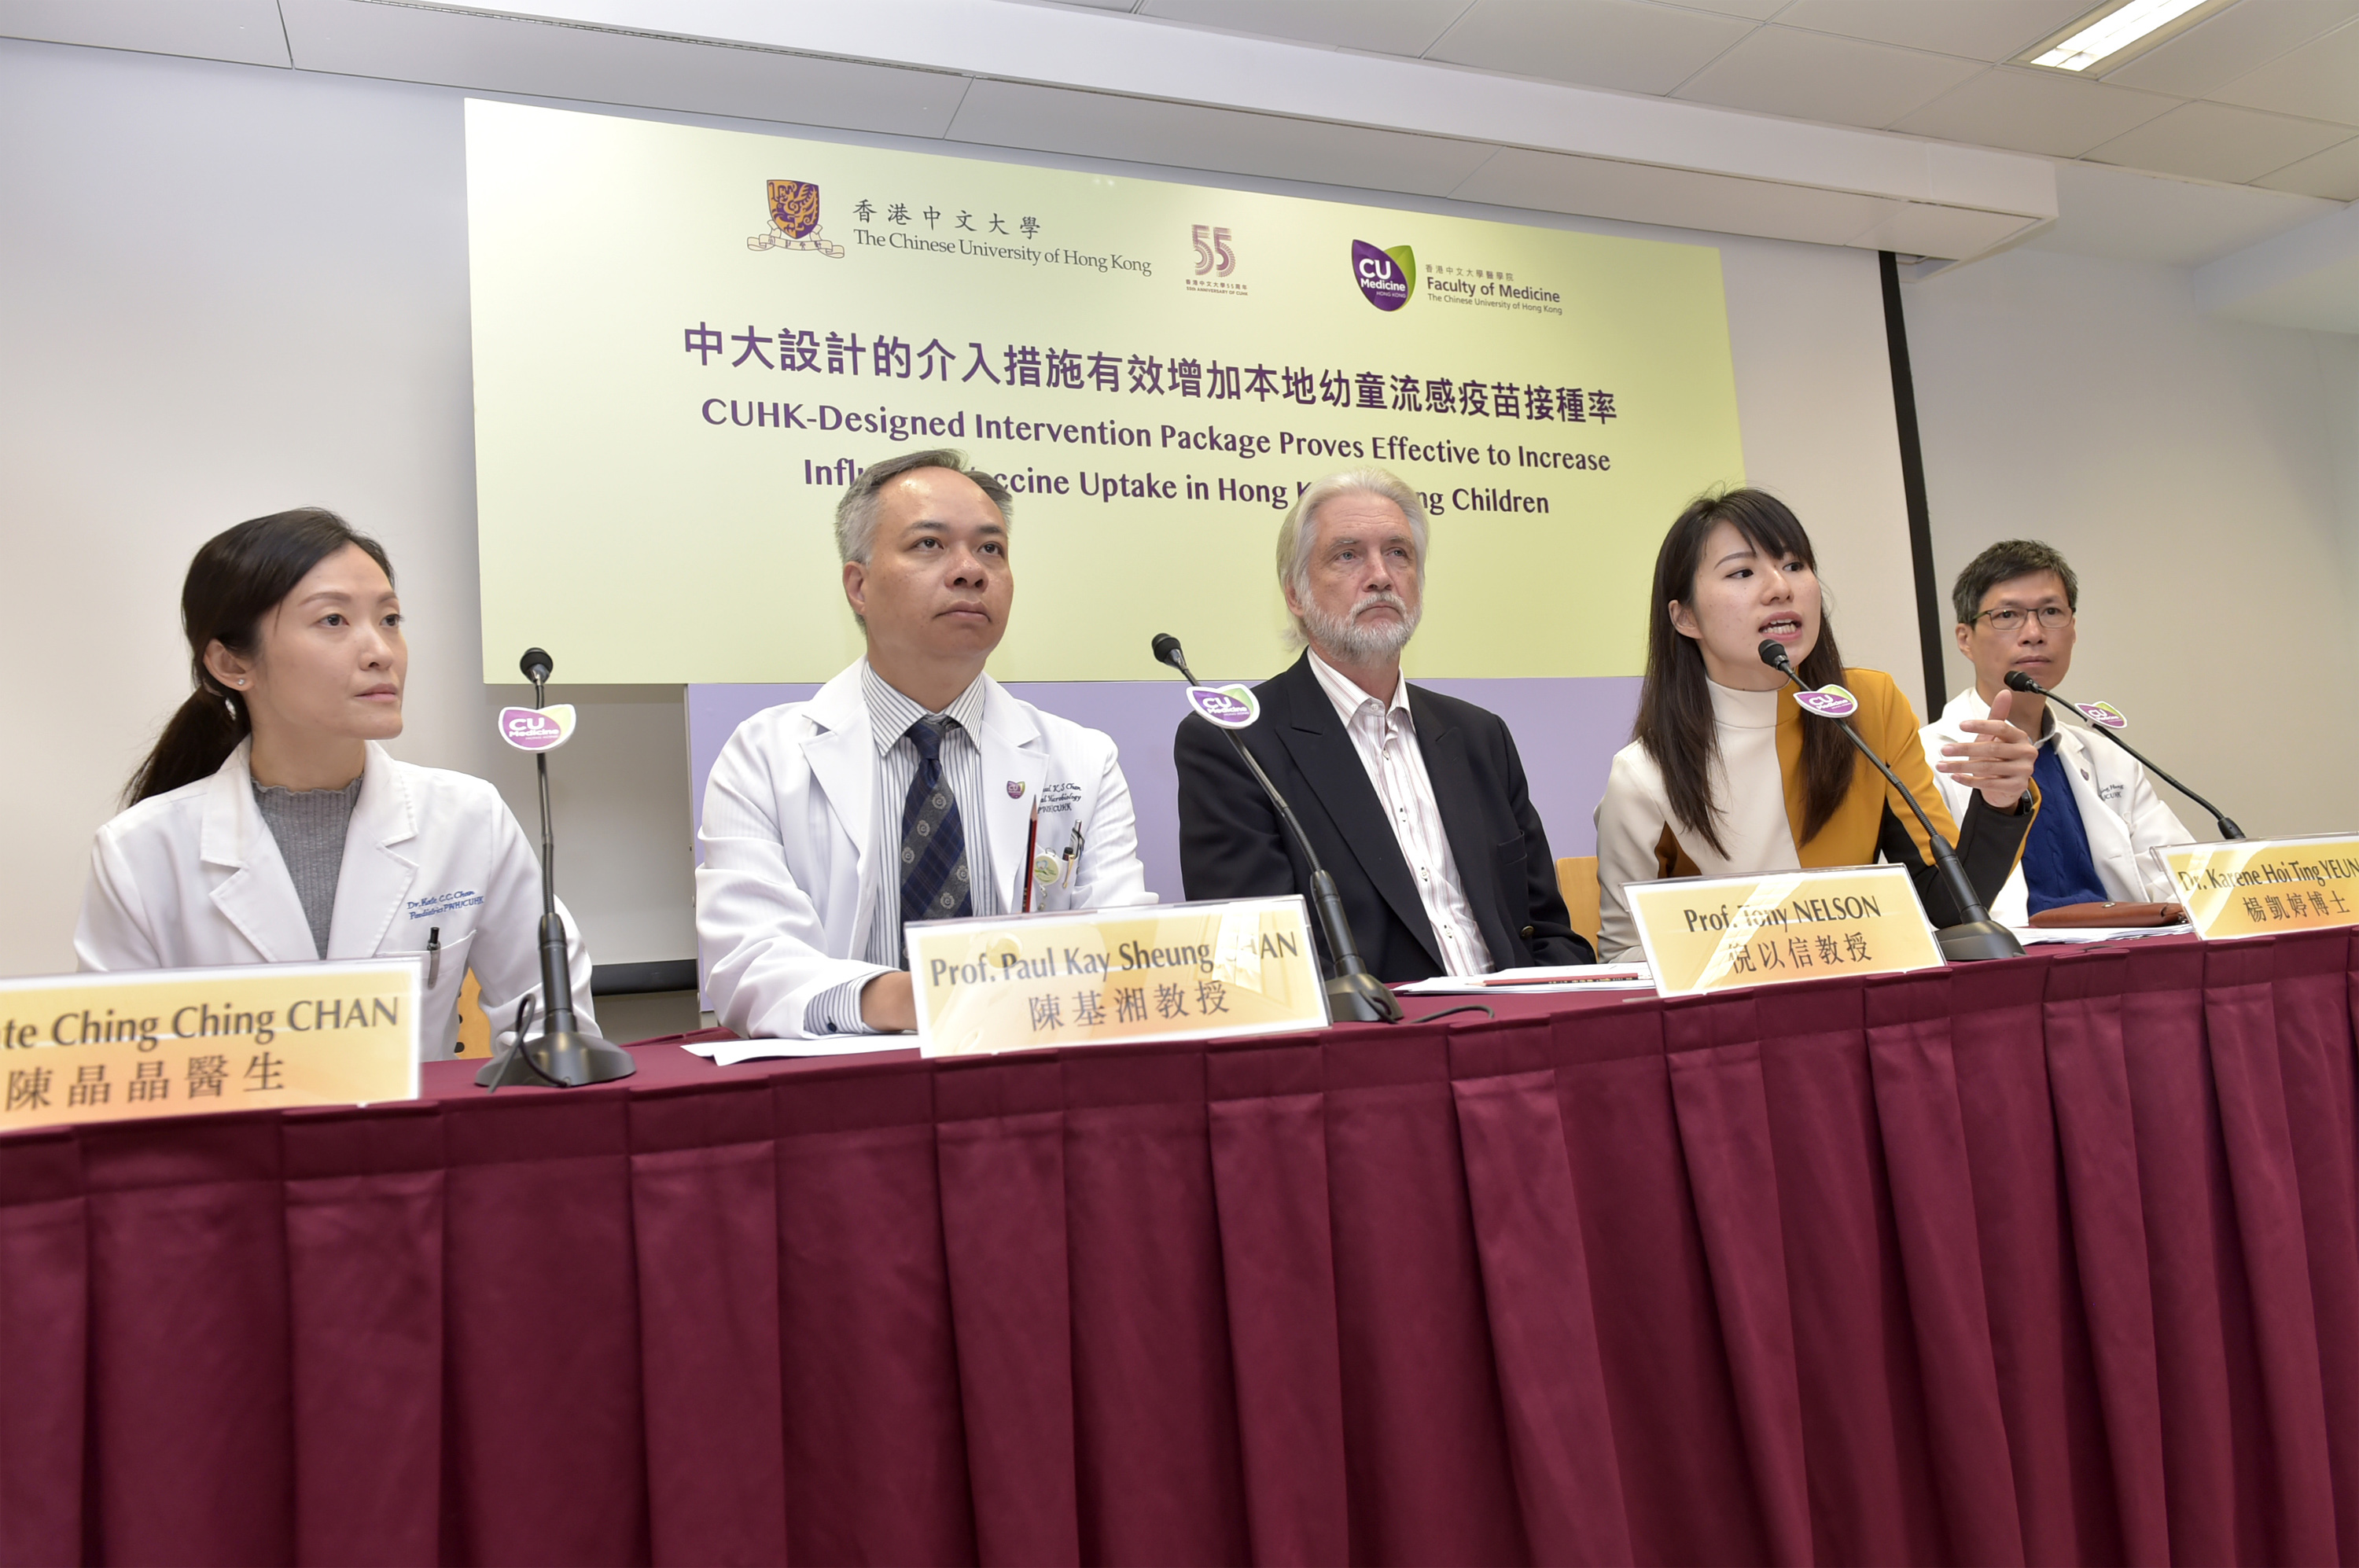 團隊期望流感疫苗可被納入香港的兒童免疫接種計劃當中，以鼓勵更多家長讓子女接種疫苗。